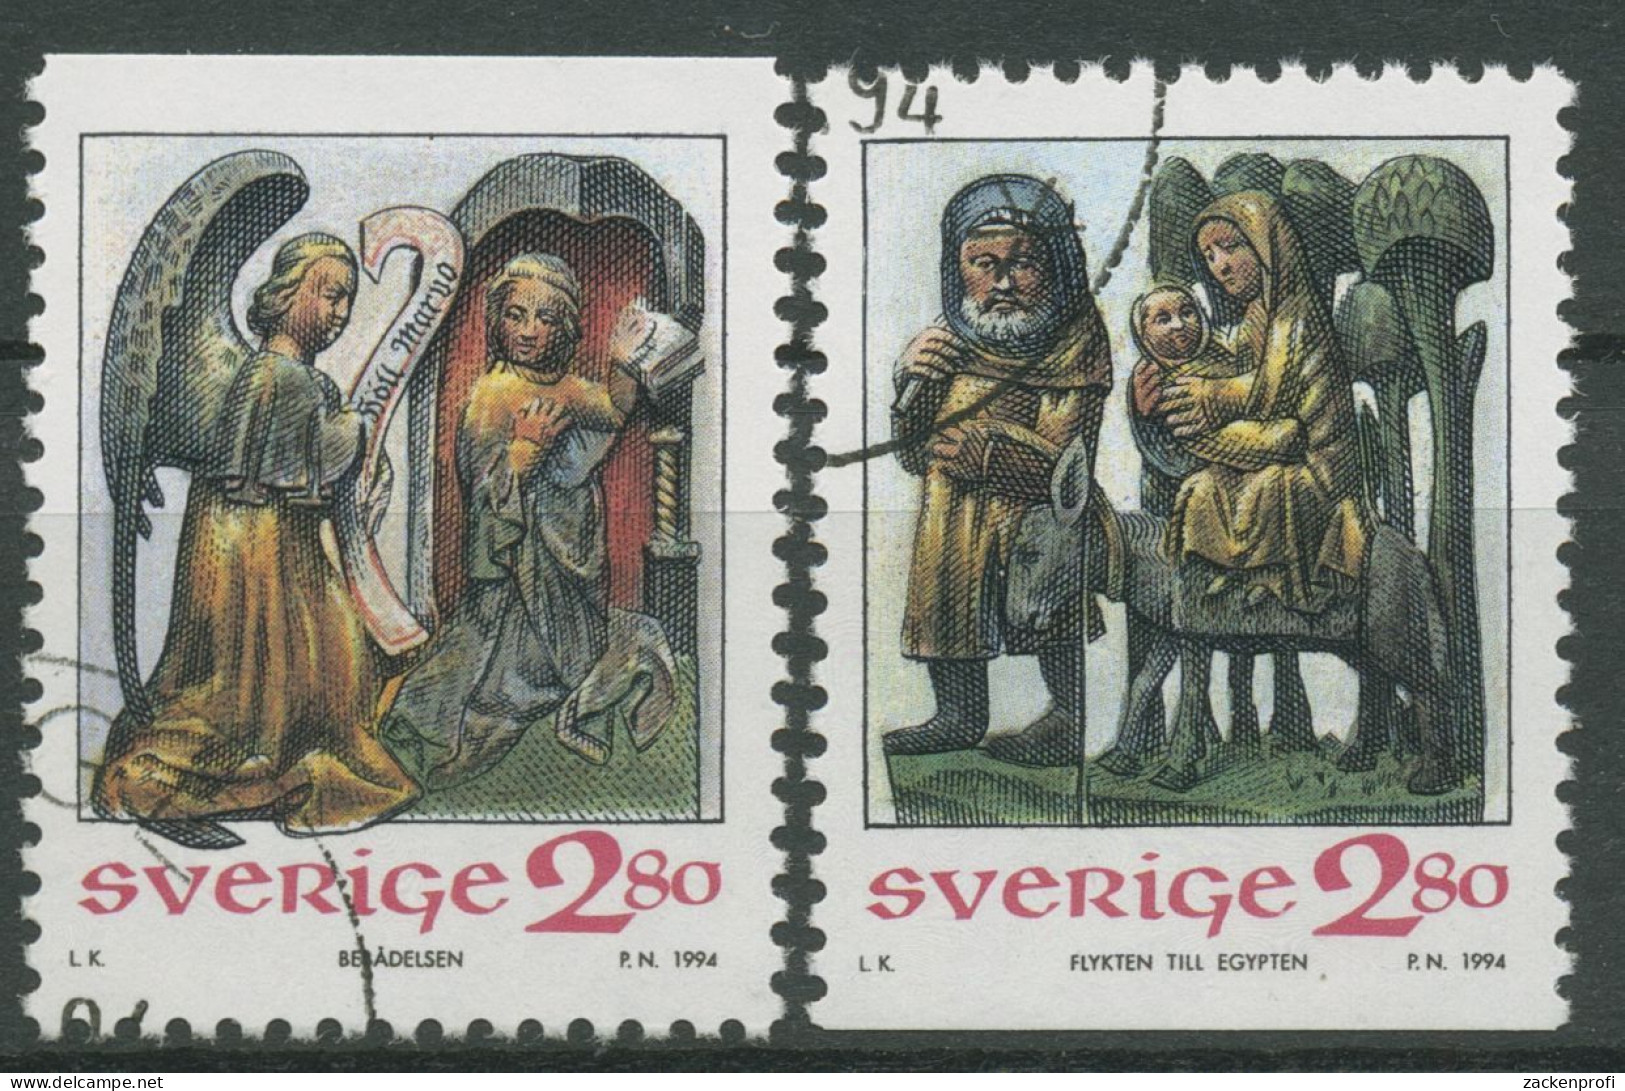 Schweden 1994 Weihnachten Kirche Askeby Holzfiguren 1857/58 Gestempelt - Used Stamps